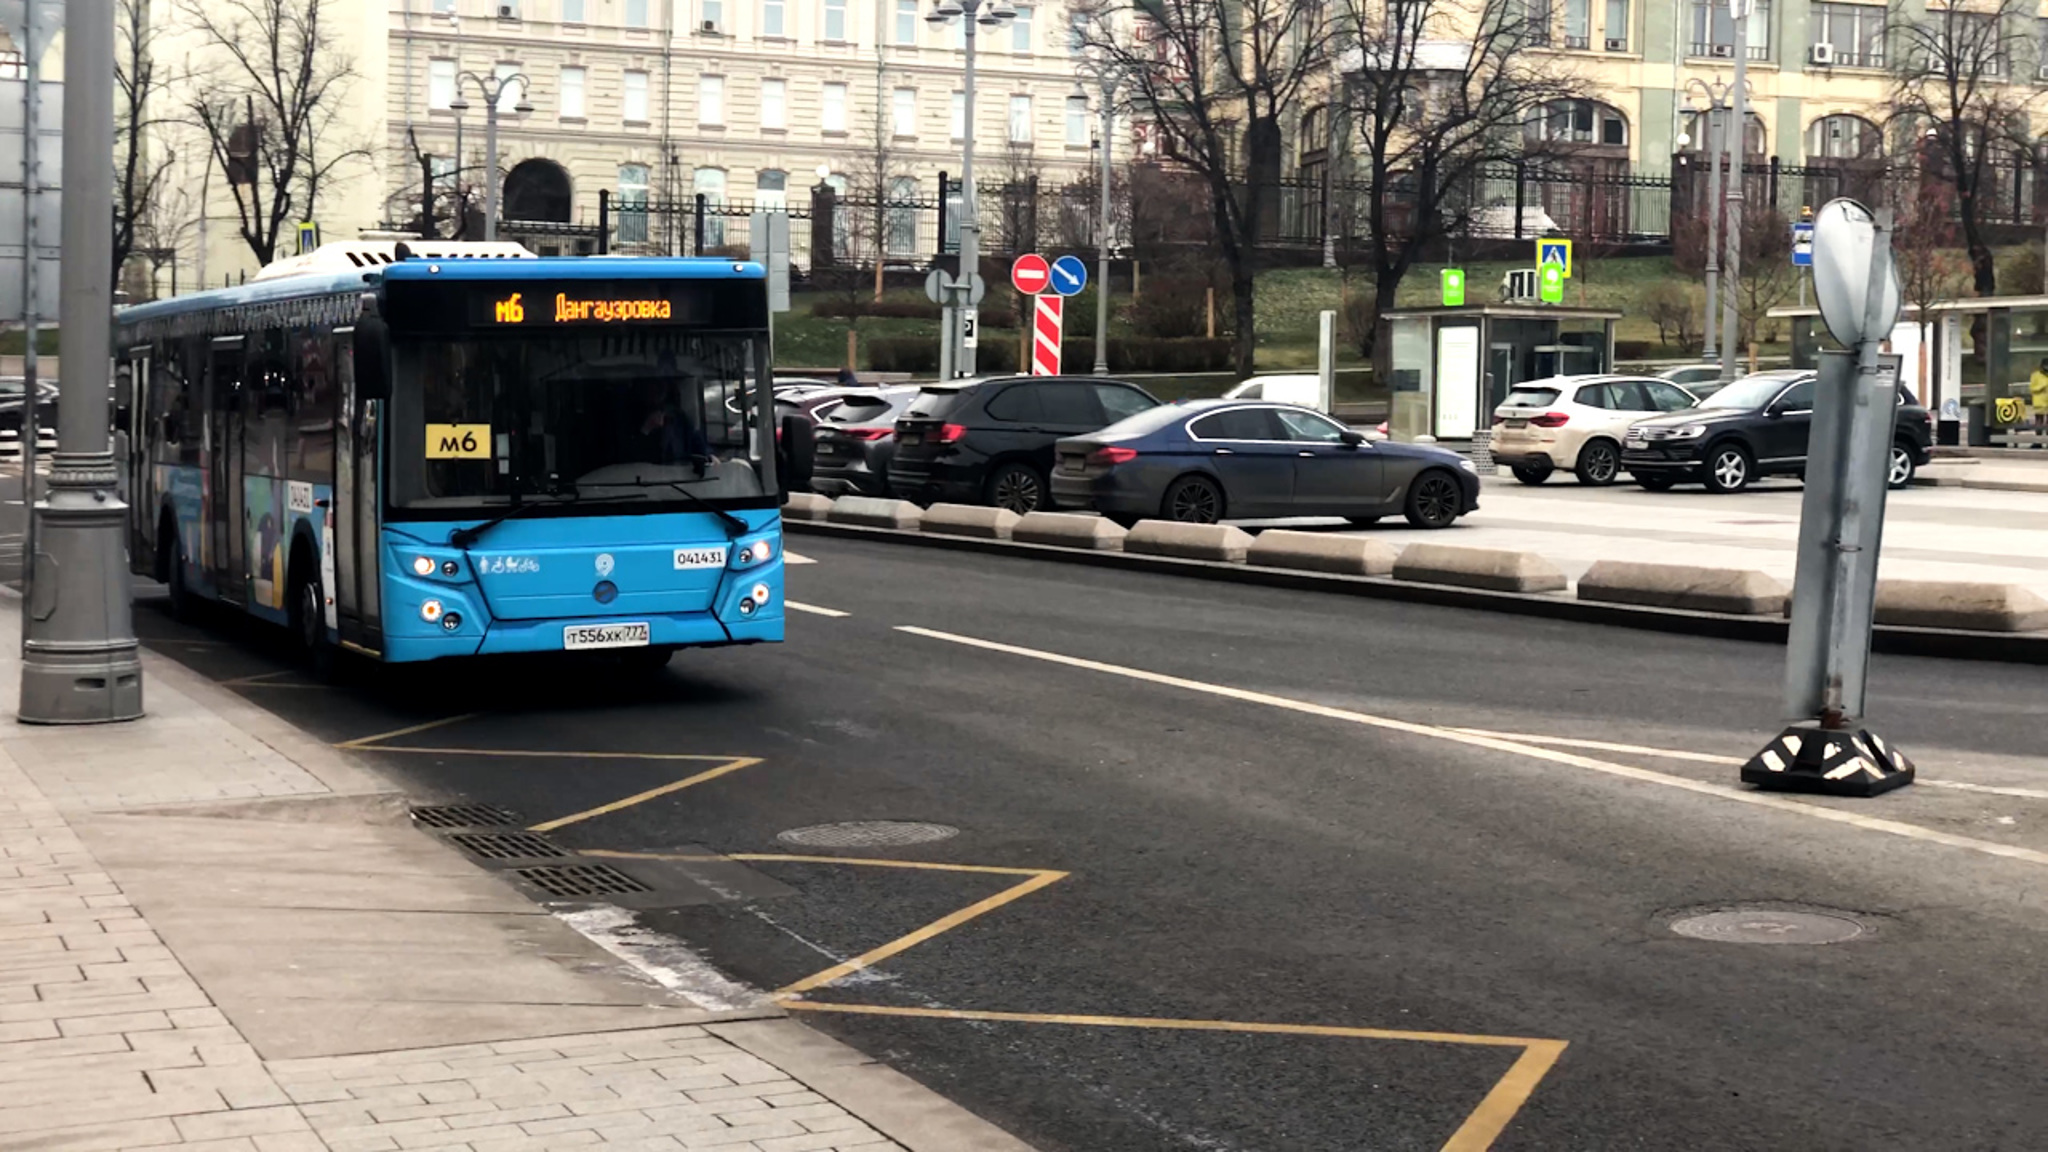 Камеры общественного транспорта. Автобус Москва. Транспорт Москвы. Столичный автобус 924. Красивые оформления транспорта в Москве.